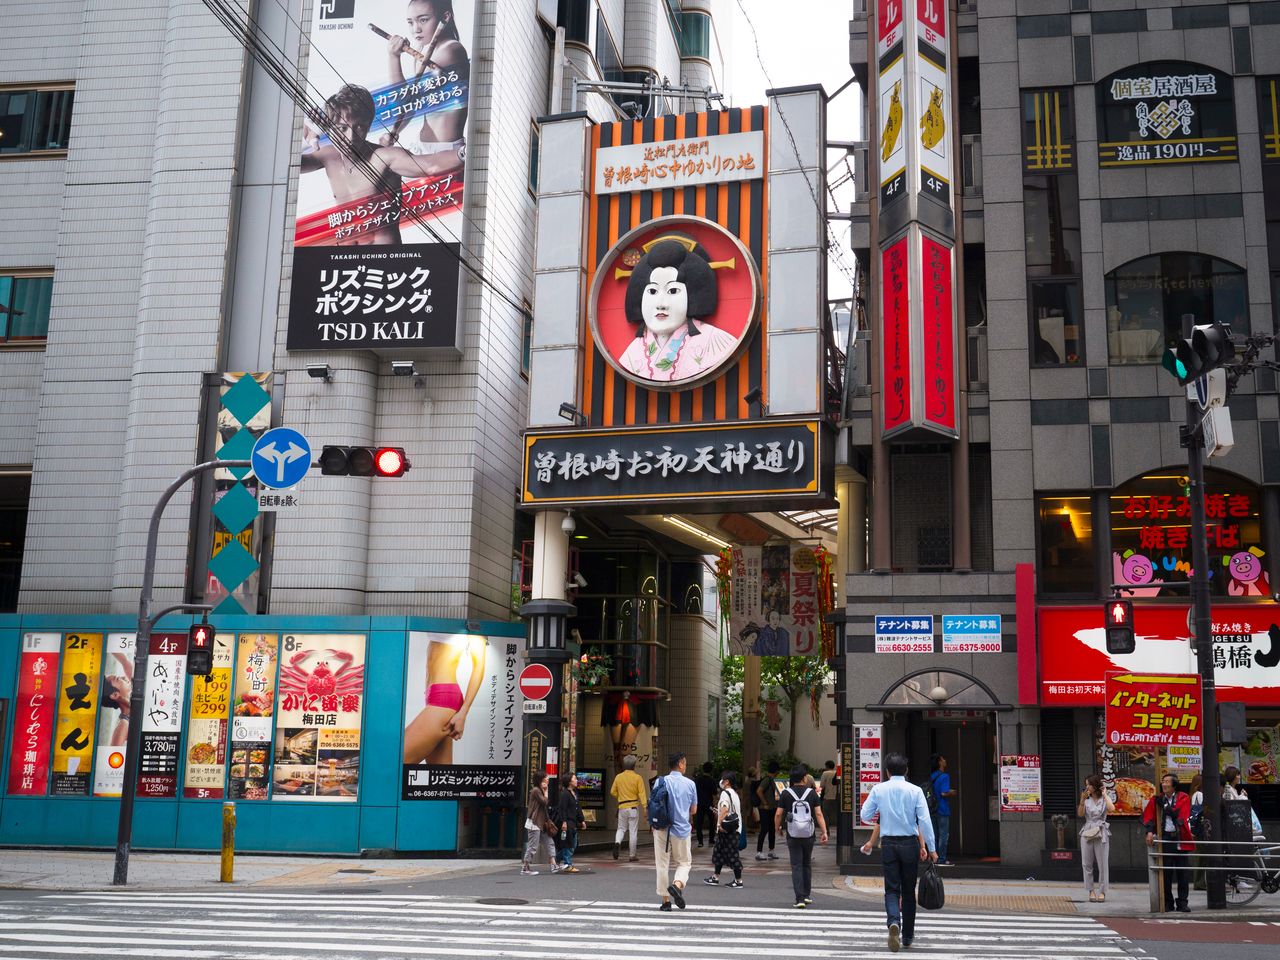 キタにも大阪らしい商店街や地下街がある。写真は大小約100店舗が軒を並べる「曽根崎お初天神通り商店街」